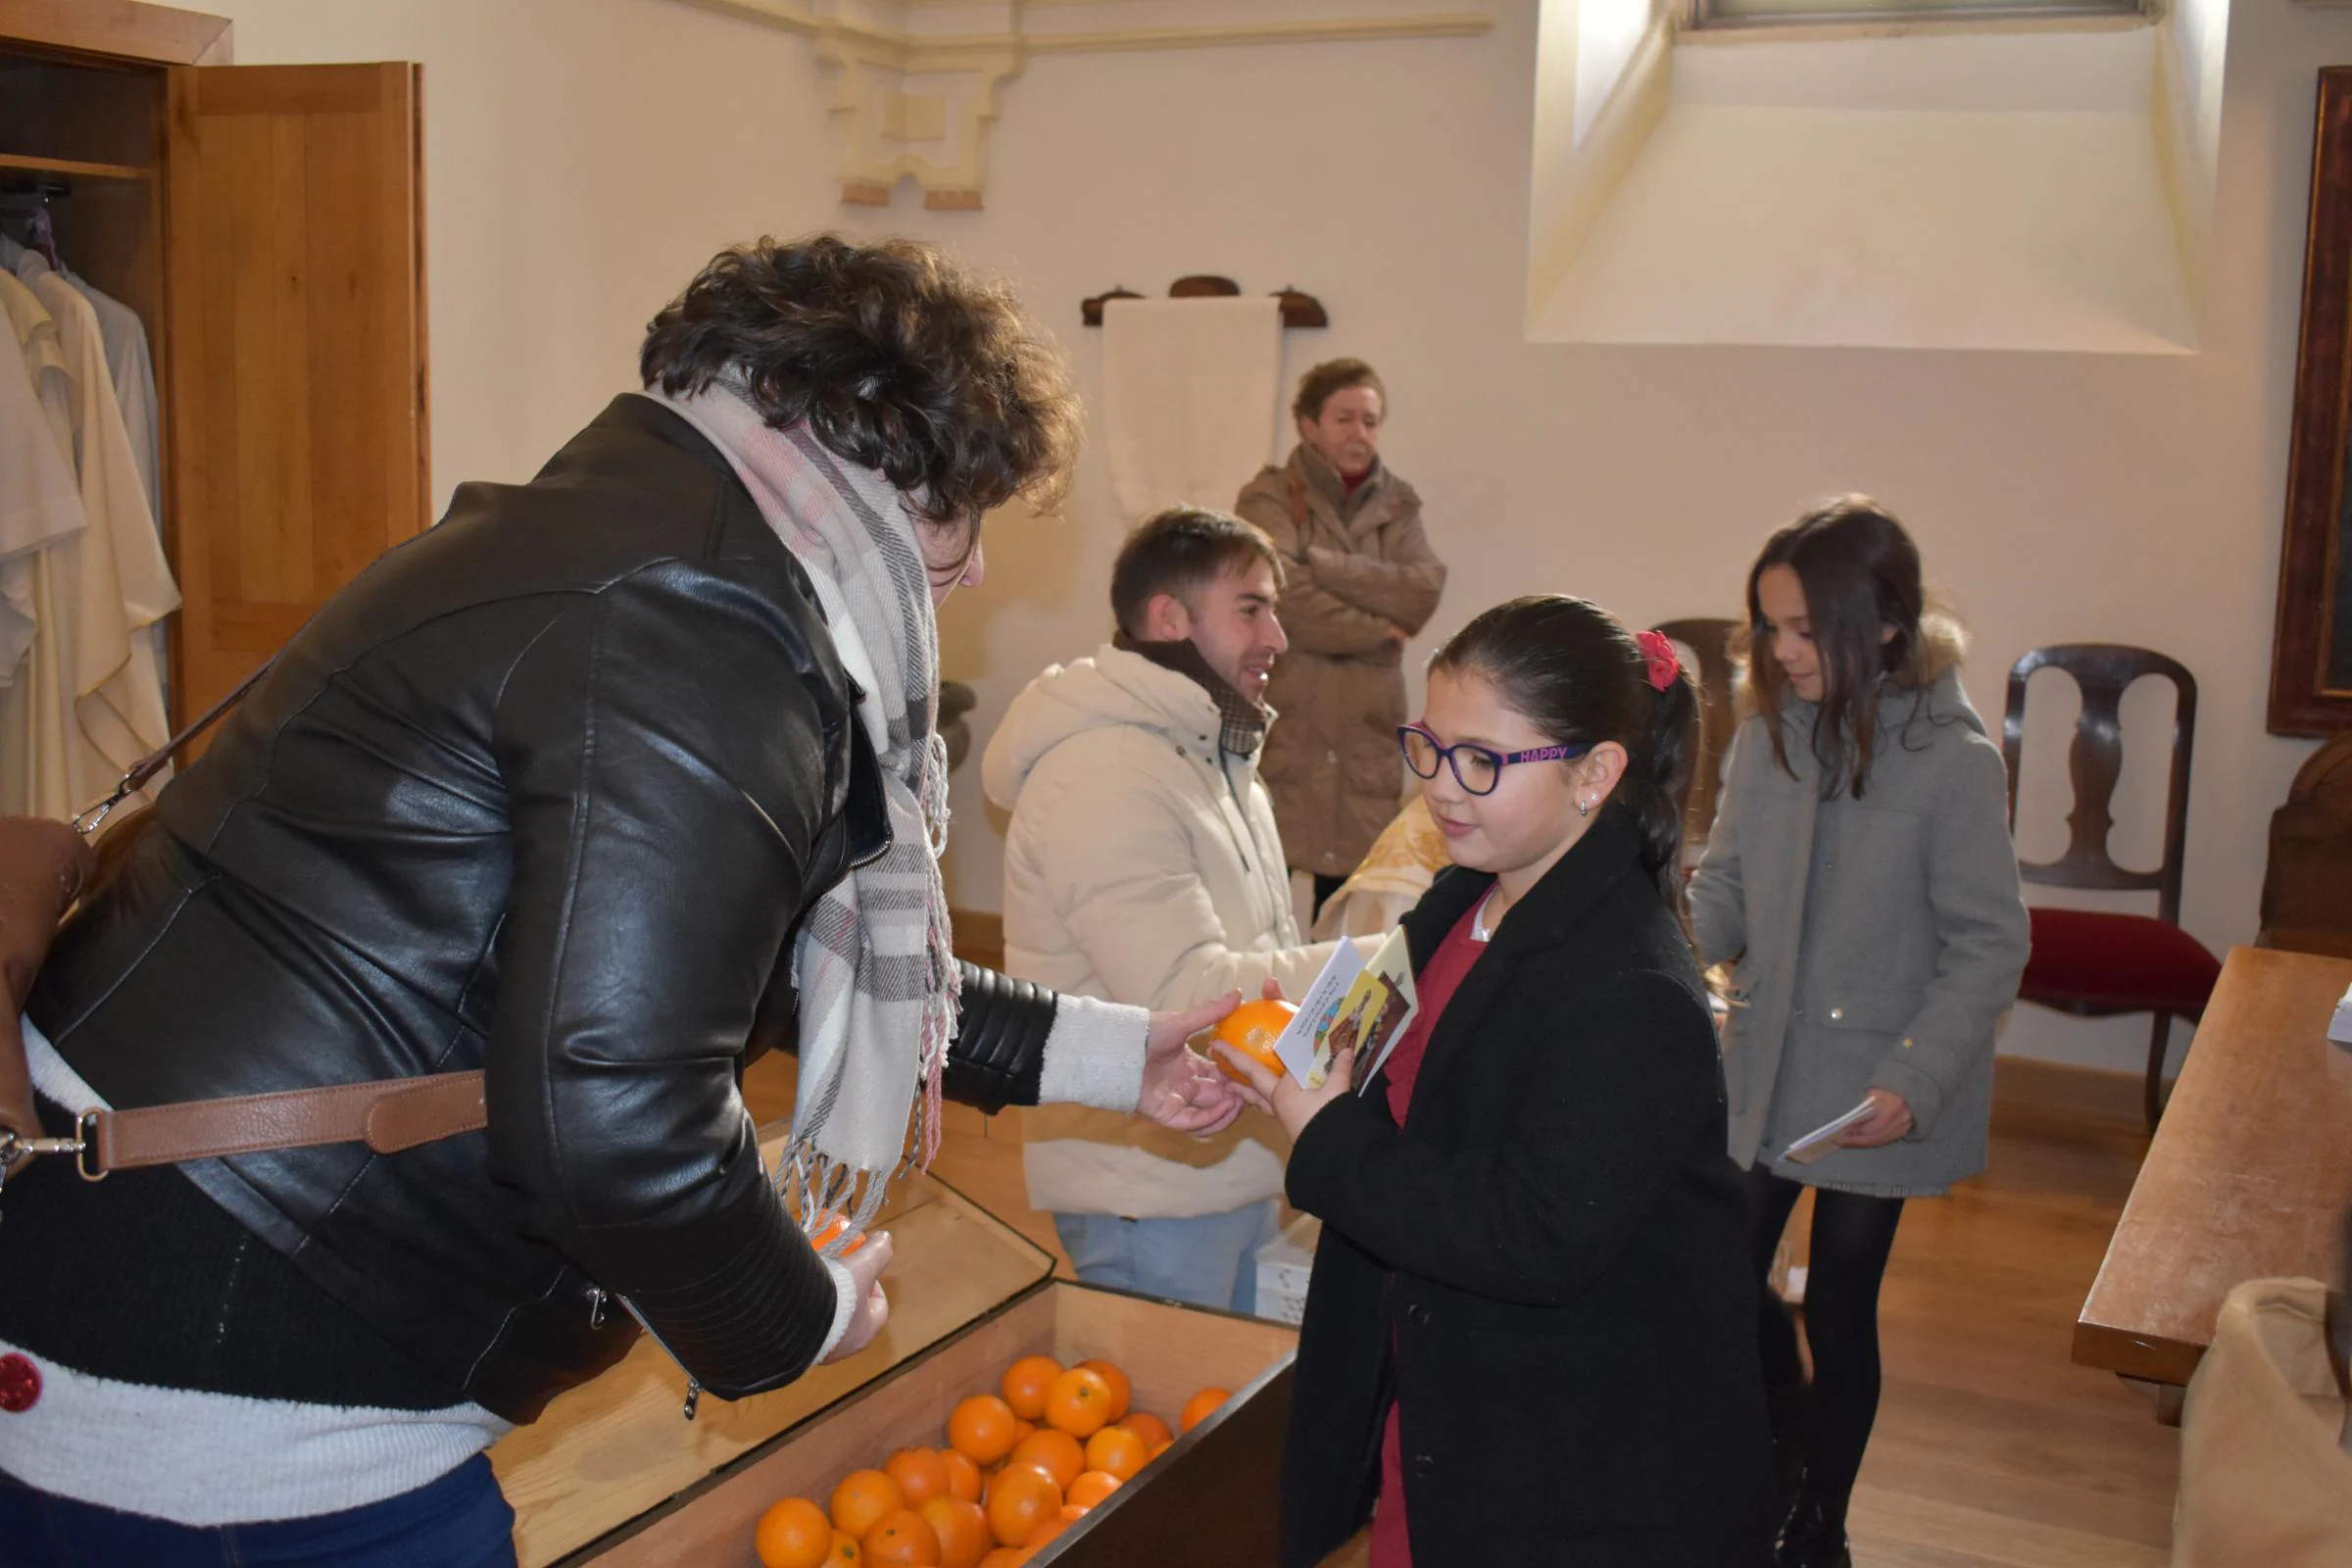 300 bollos de pan y 47 kilos de naranjas en la fiesta del Niño Jesús de Praga en Alba de Tormes